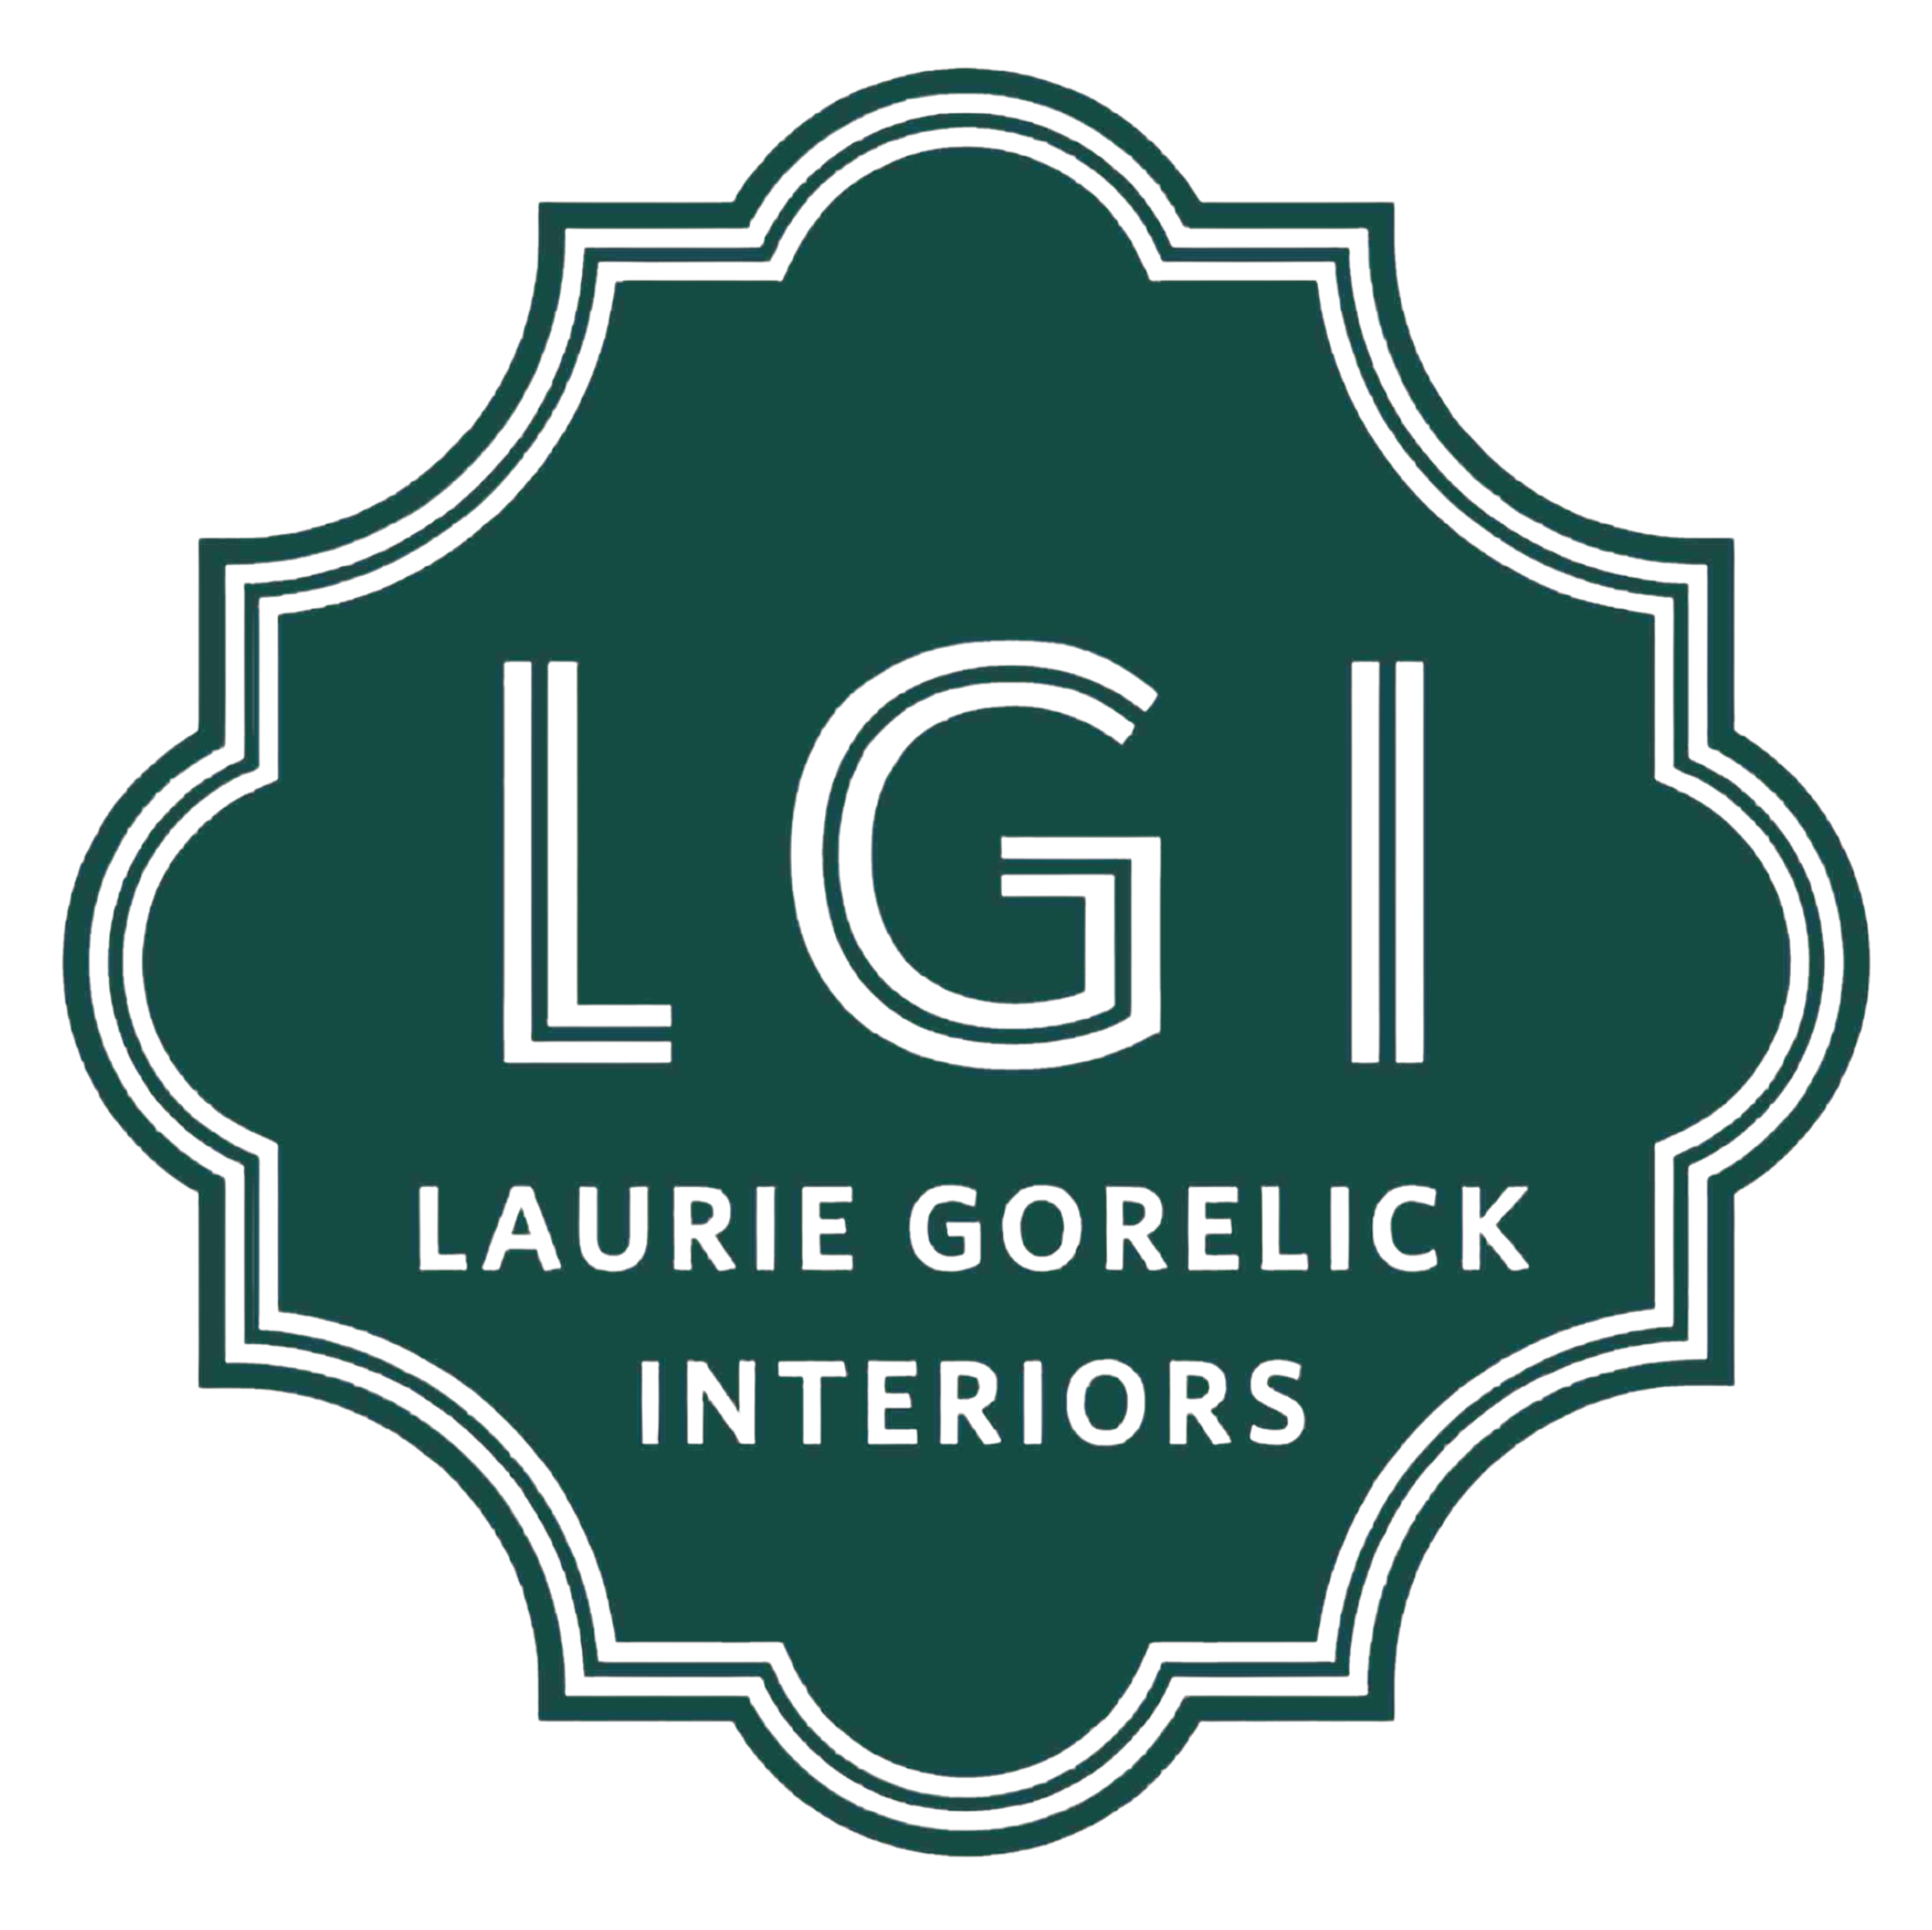 Laurie Gorelick Interiors